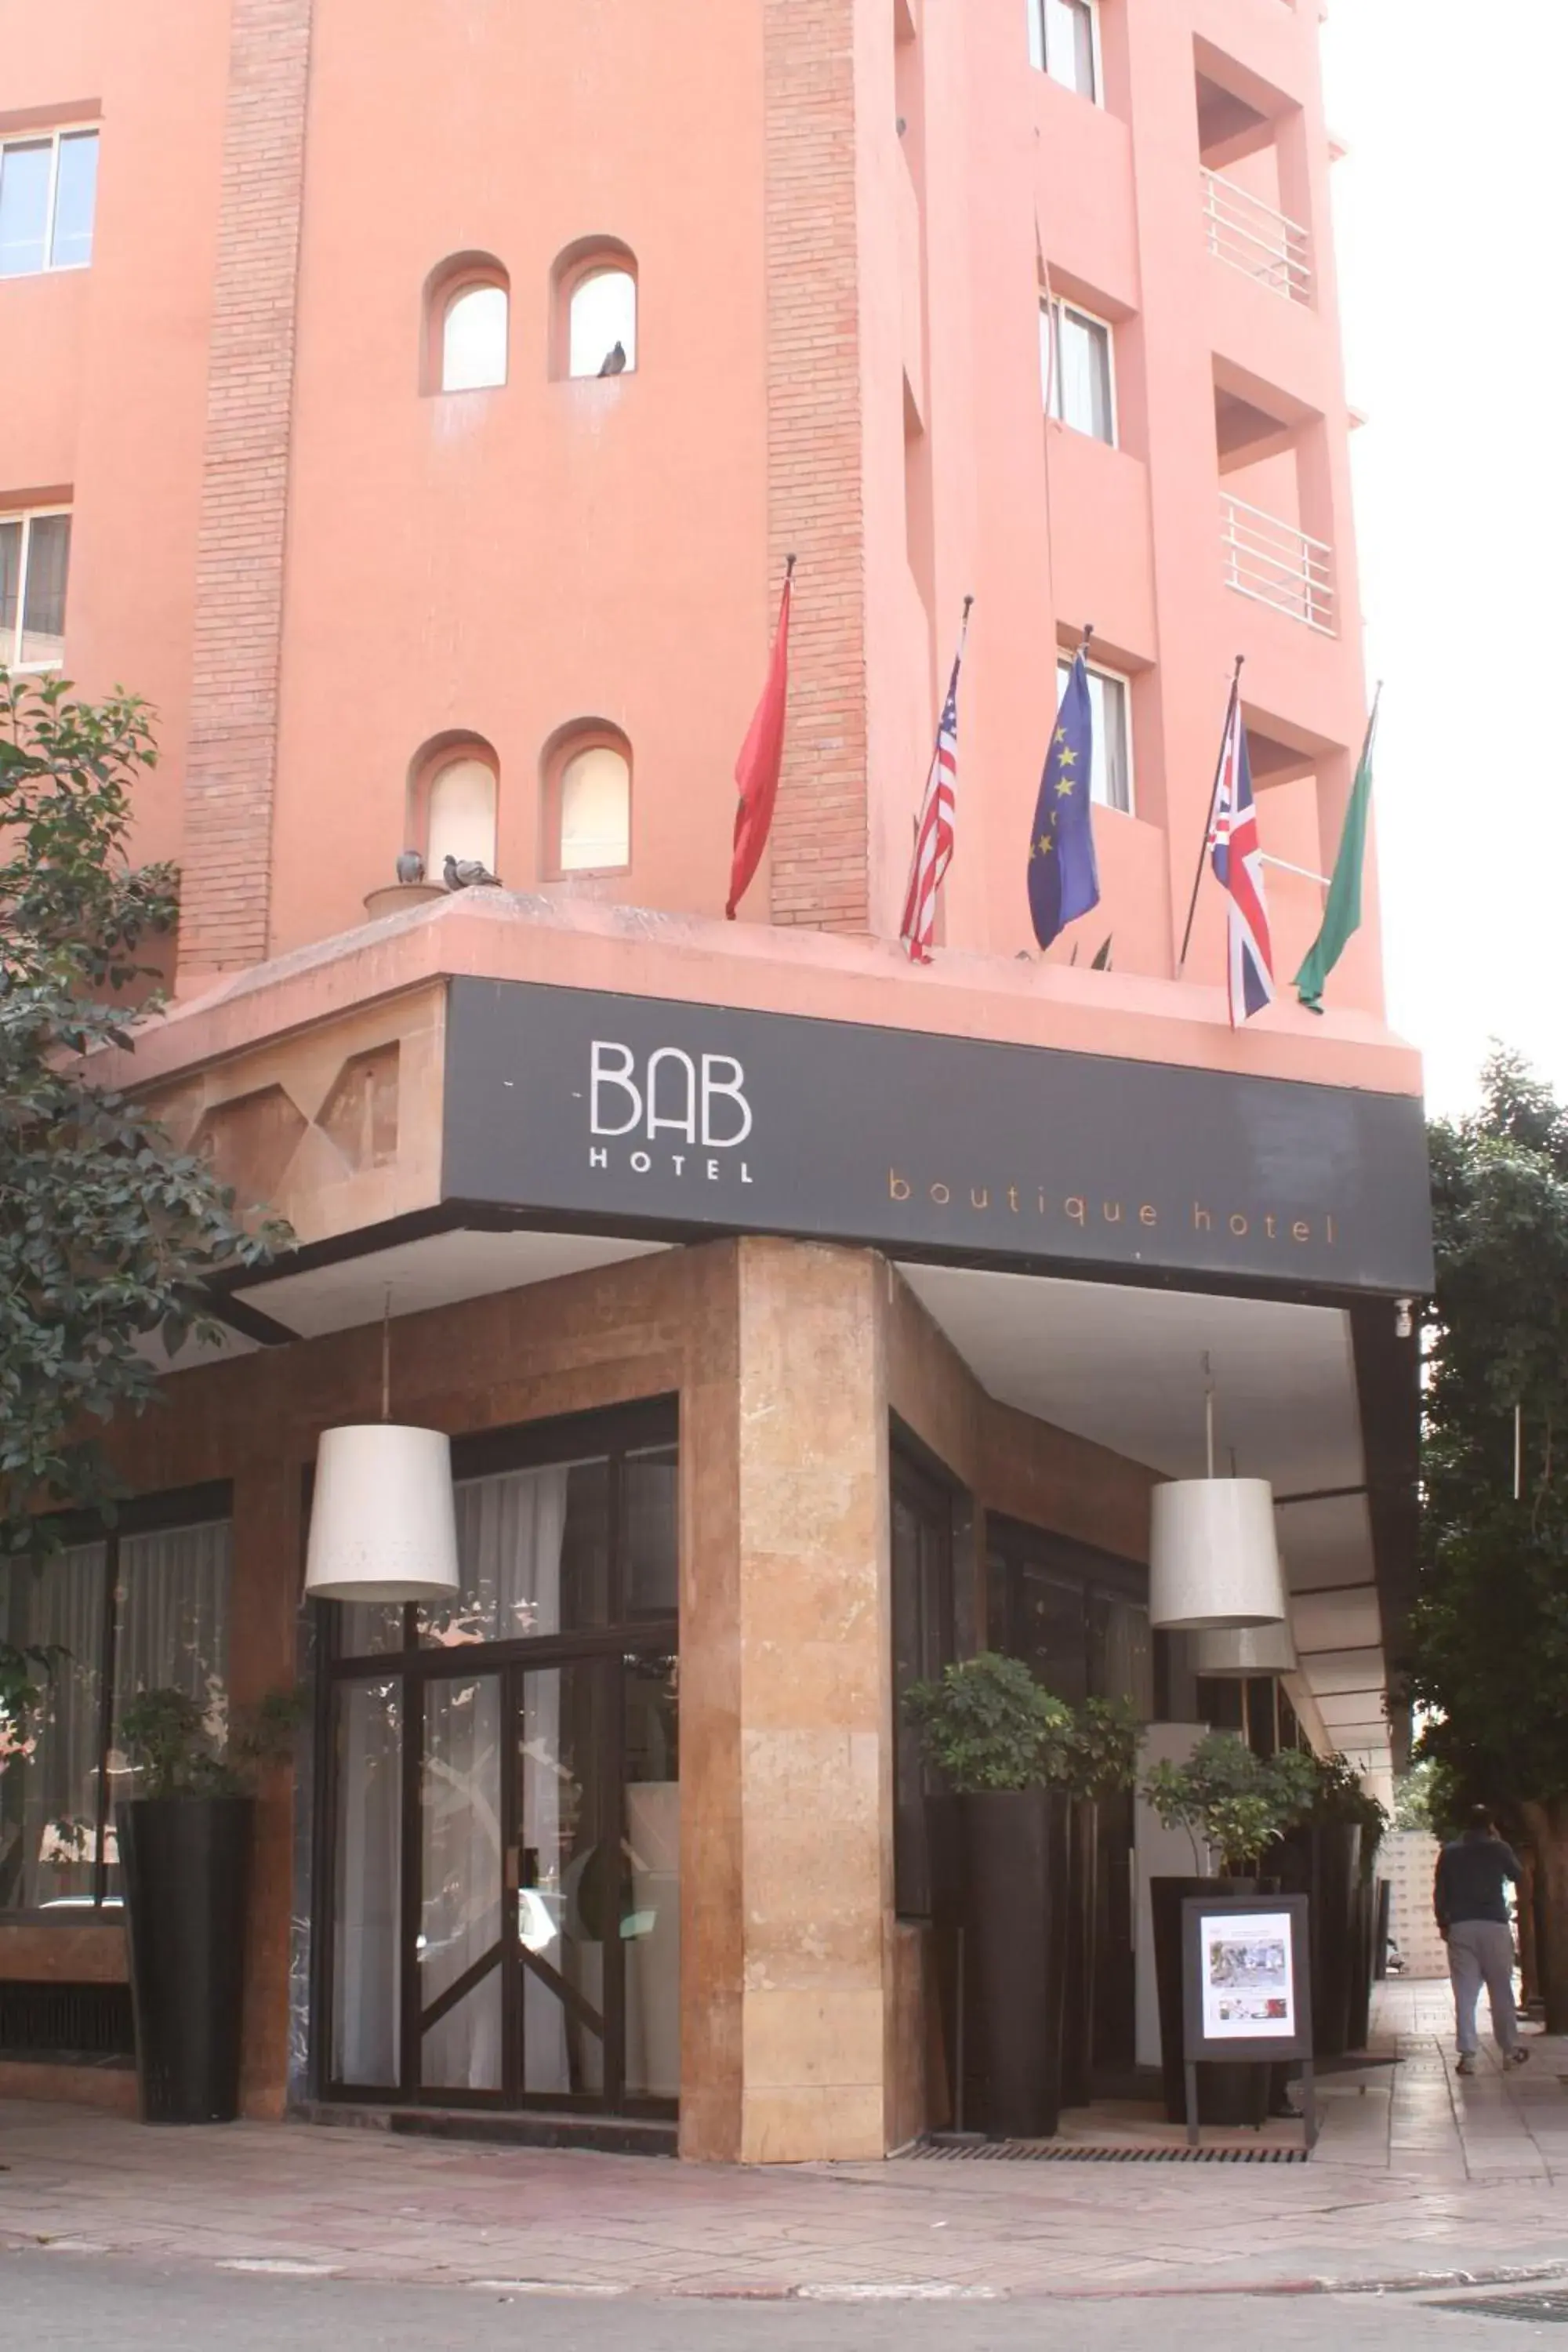 Facade/entrance in Bab Hotel